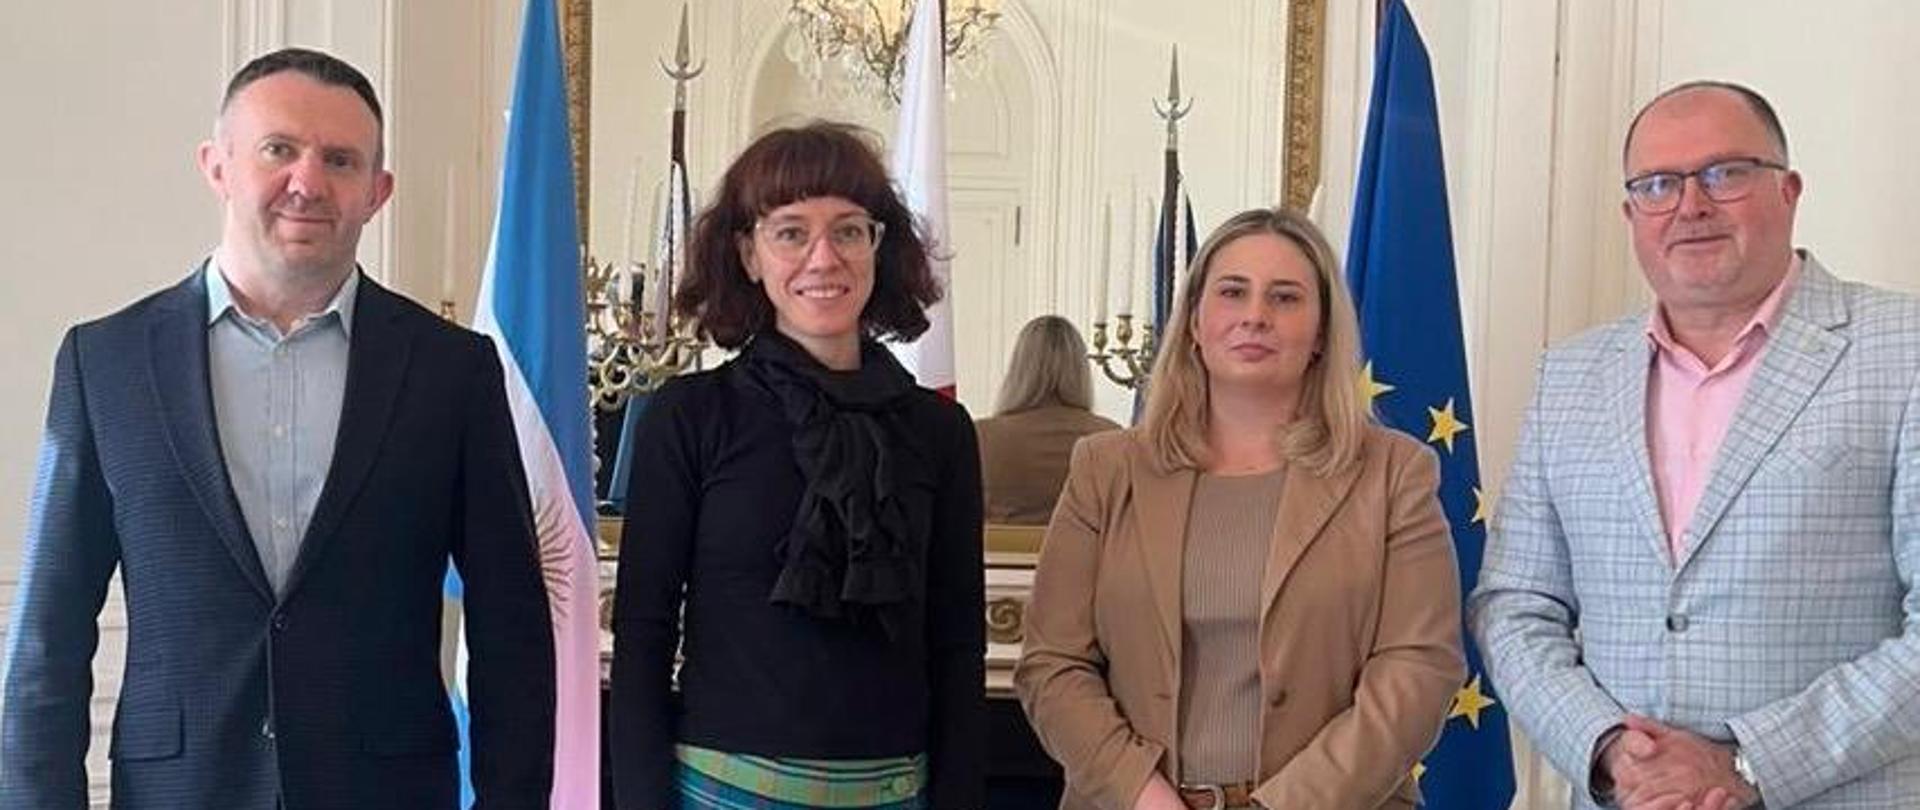 Monika Perendyk, Konsul RP w Argentynie, spotkała się z przedstawicielami polskiej uczelni Katolickiego Uniwersytetu Lubelskiego Jana Pawła II oraz argentyńskiego Universidad Nacional de Quilmes.